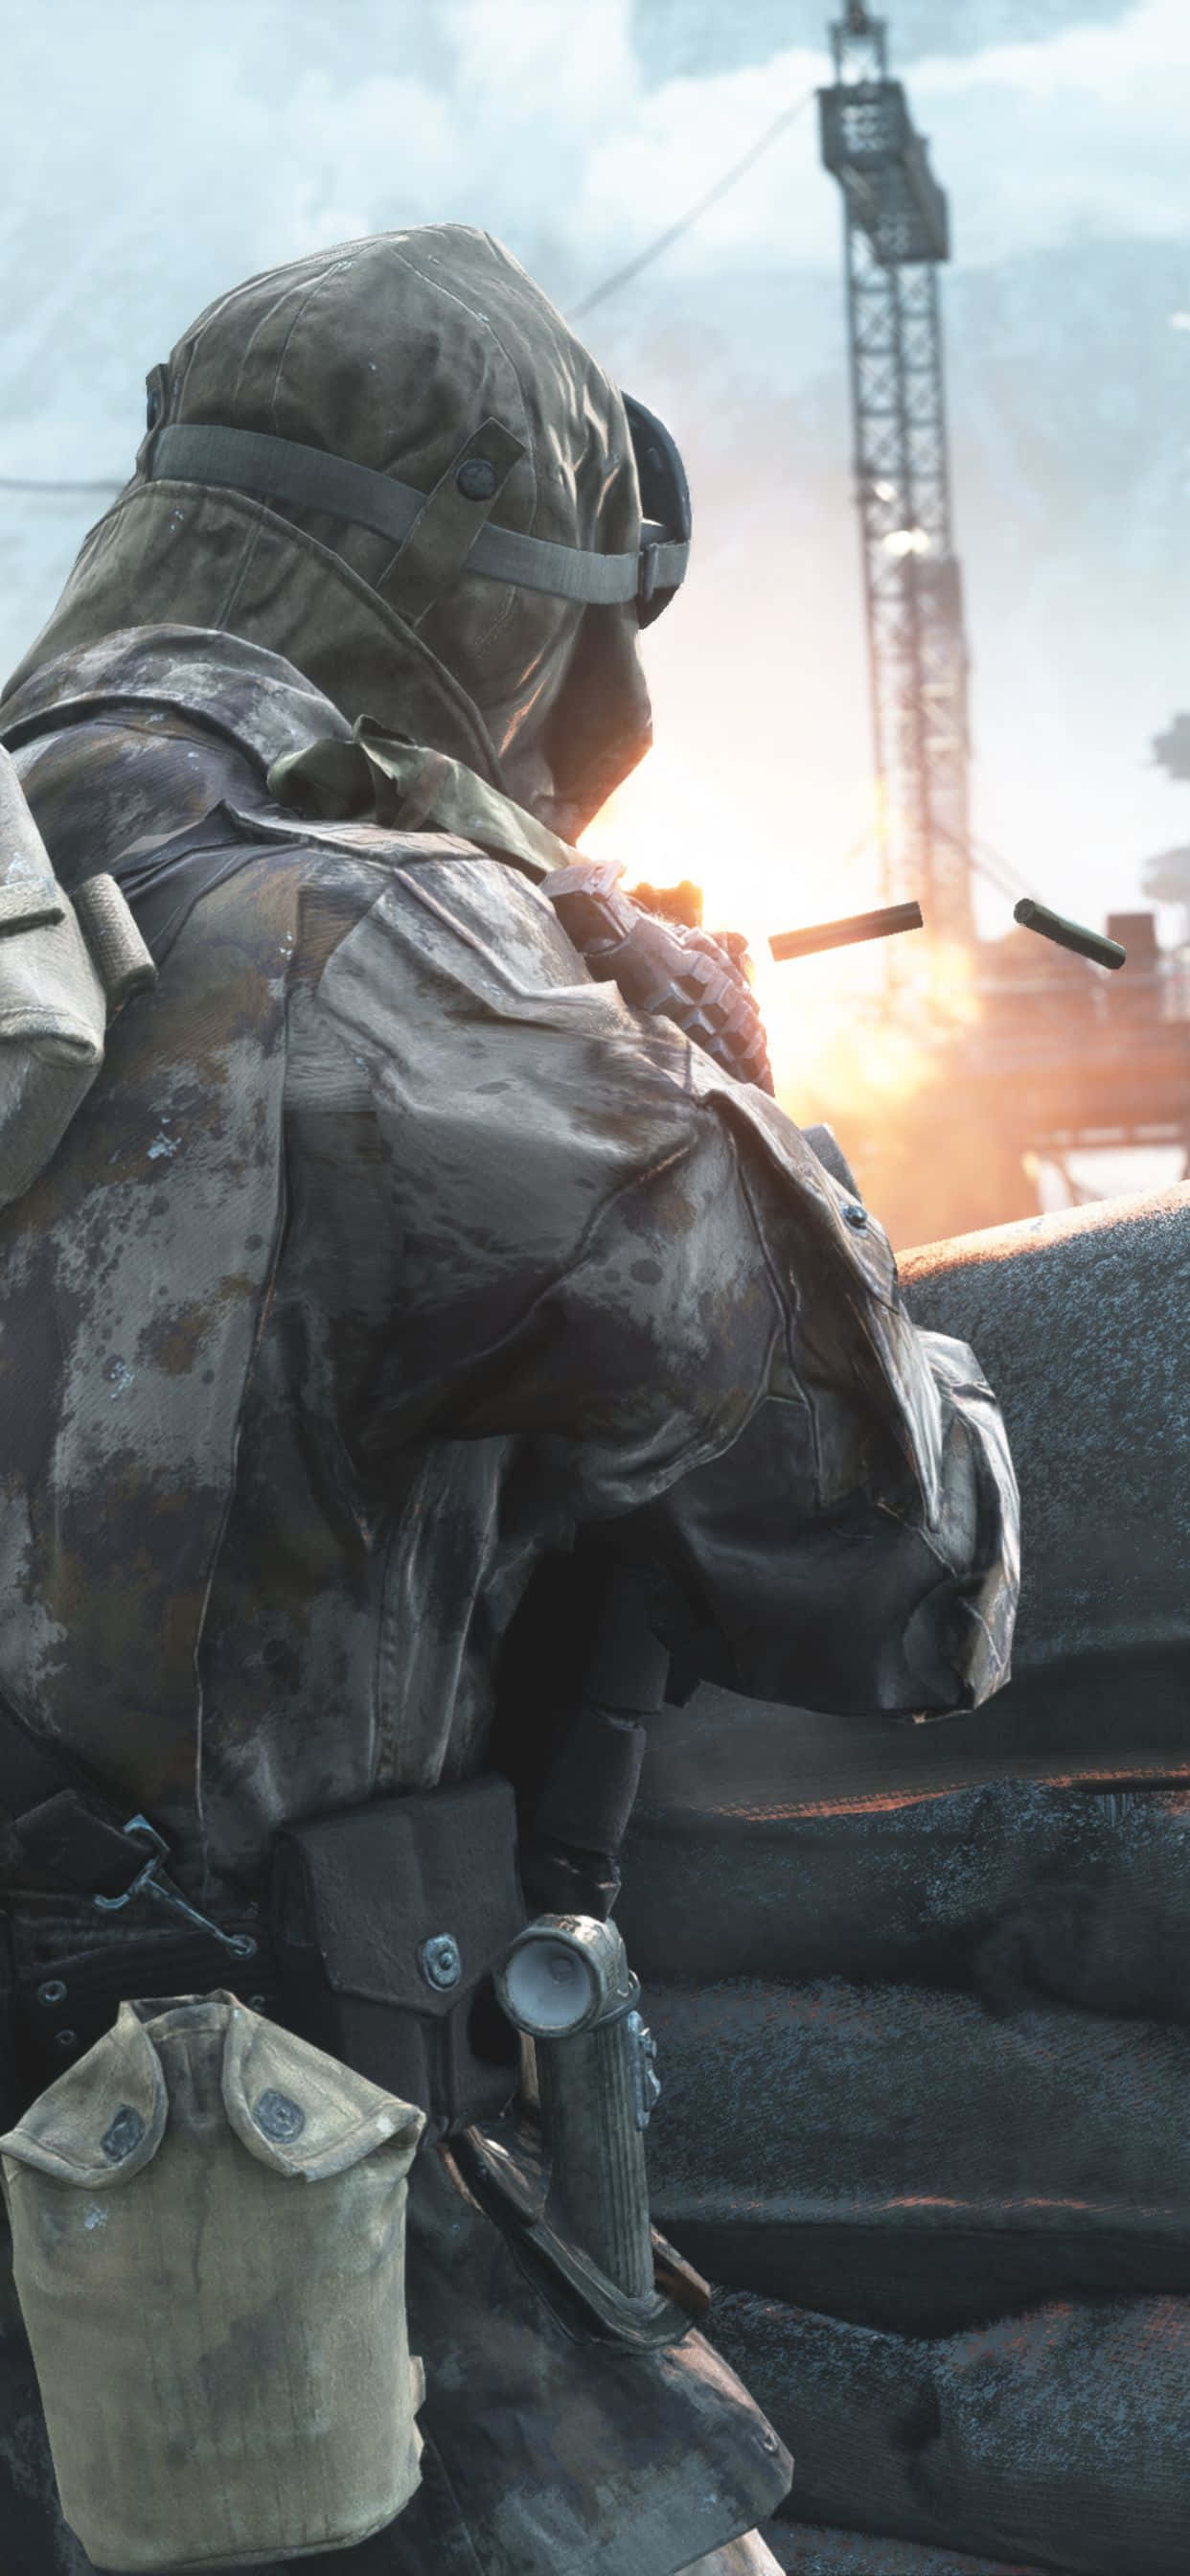 Iphonexs Max Hintergrund Mit Battlefield V Kugel-sandsack